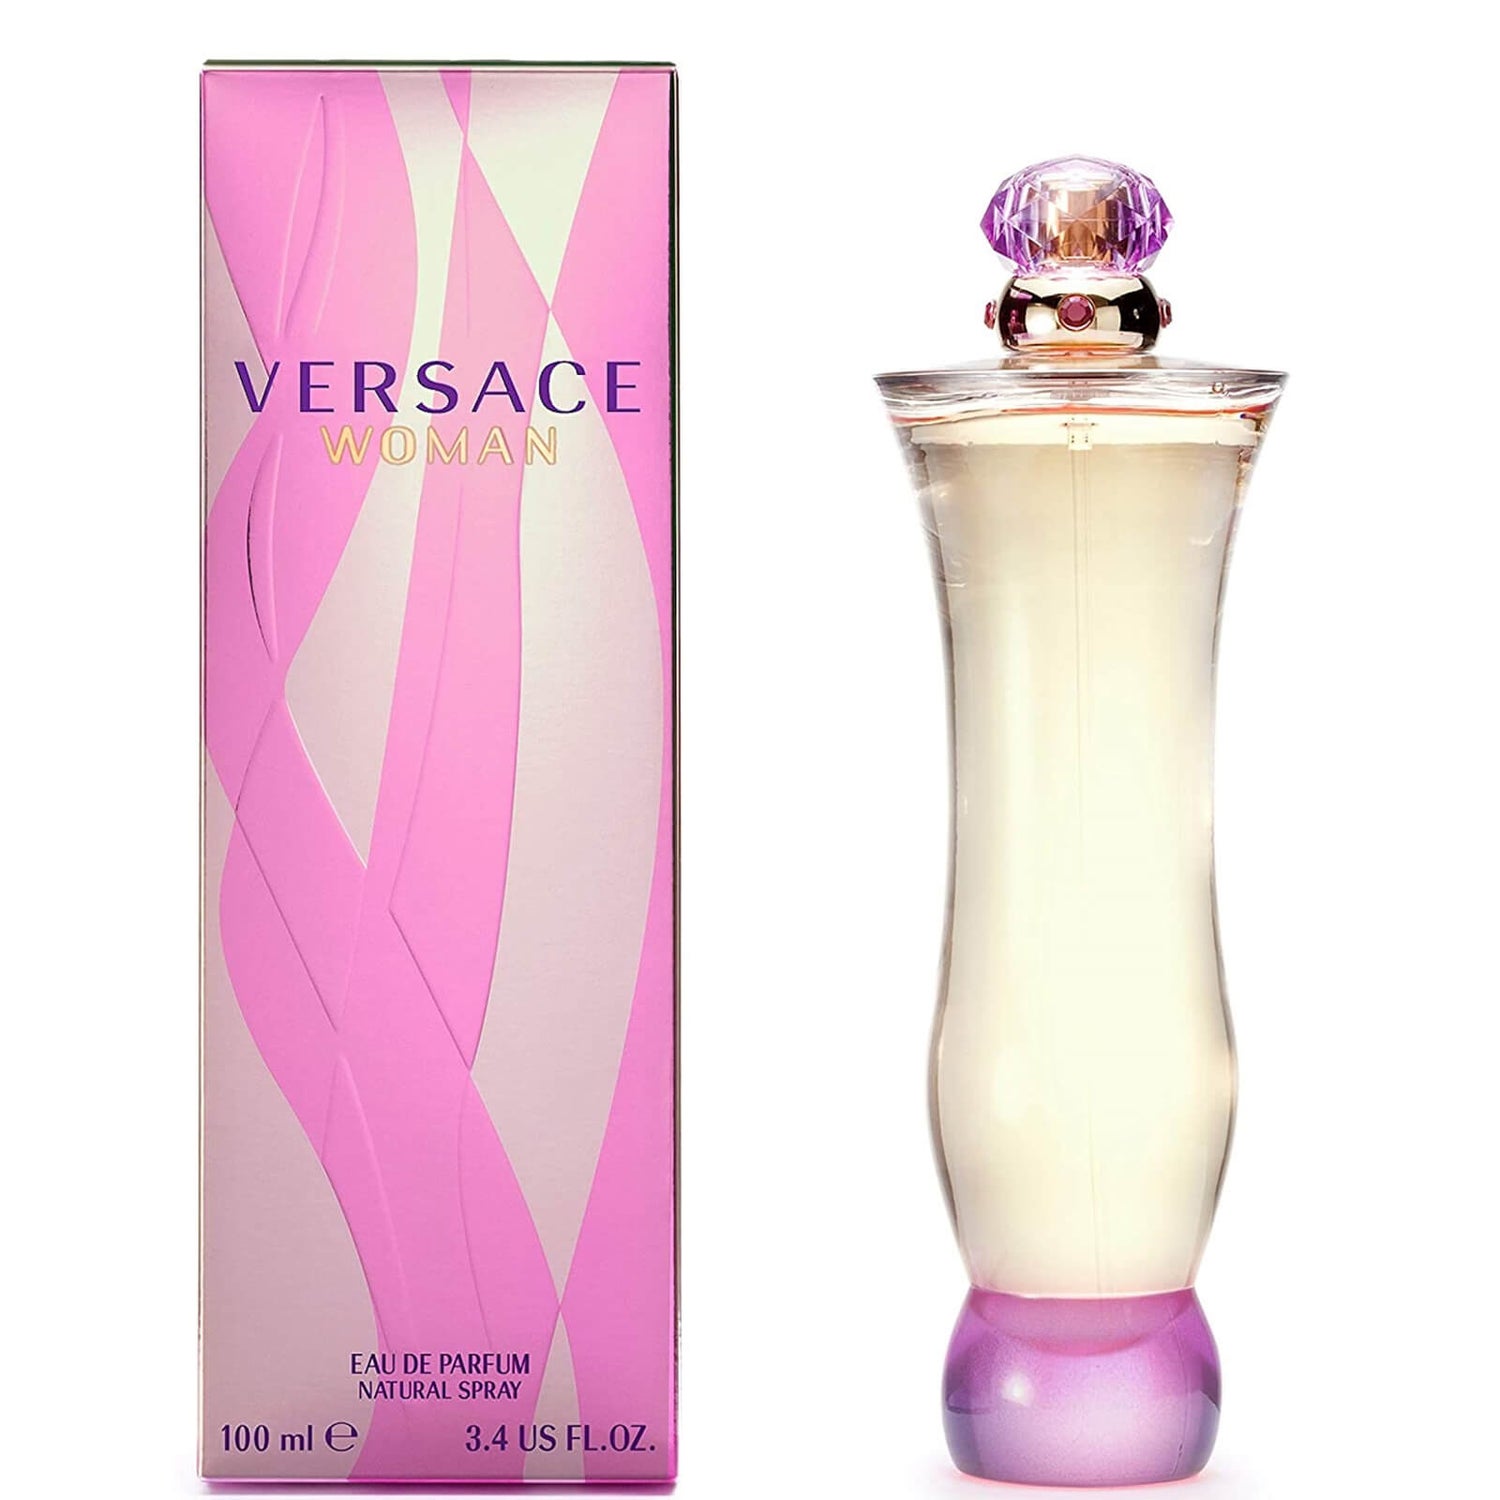 fuzzy forum foretage Versace Woman Eau de Parfum 100ml - lookfantastic